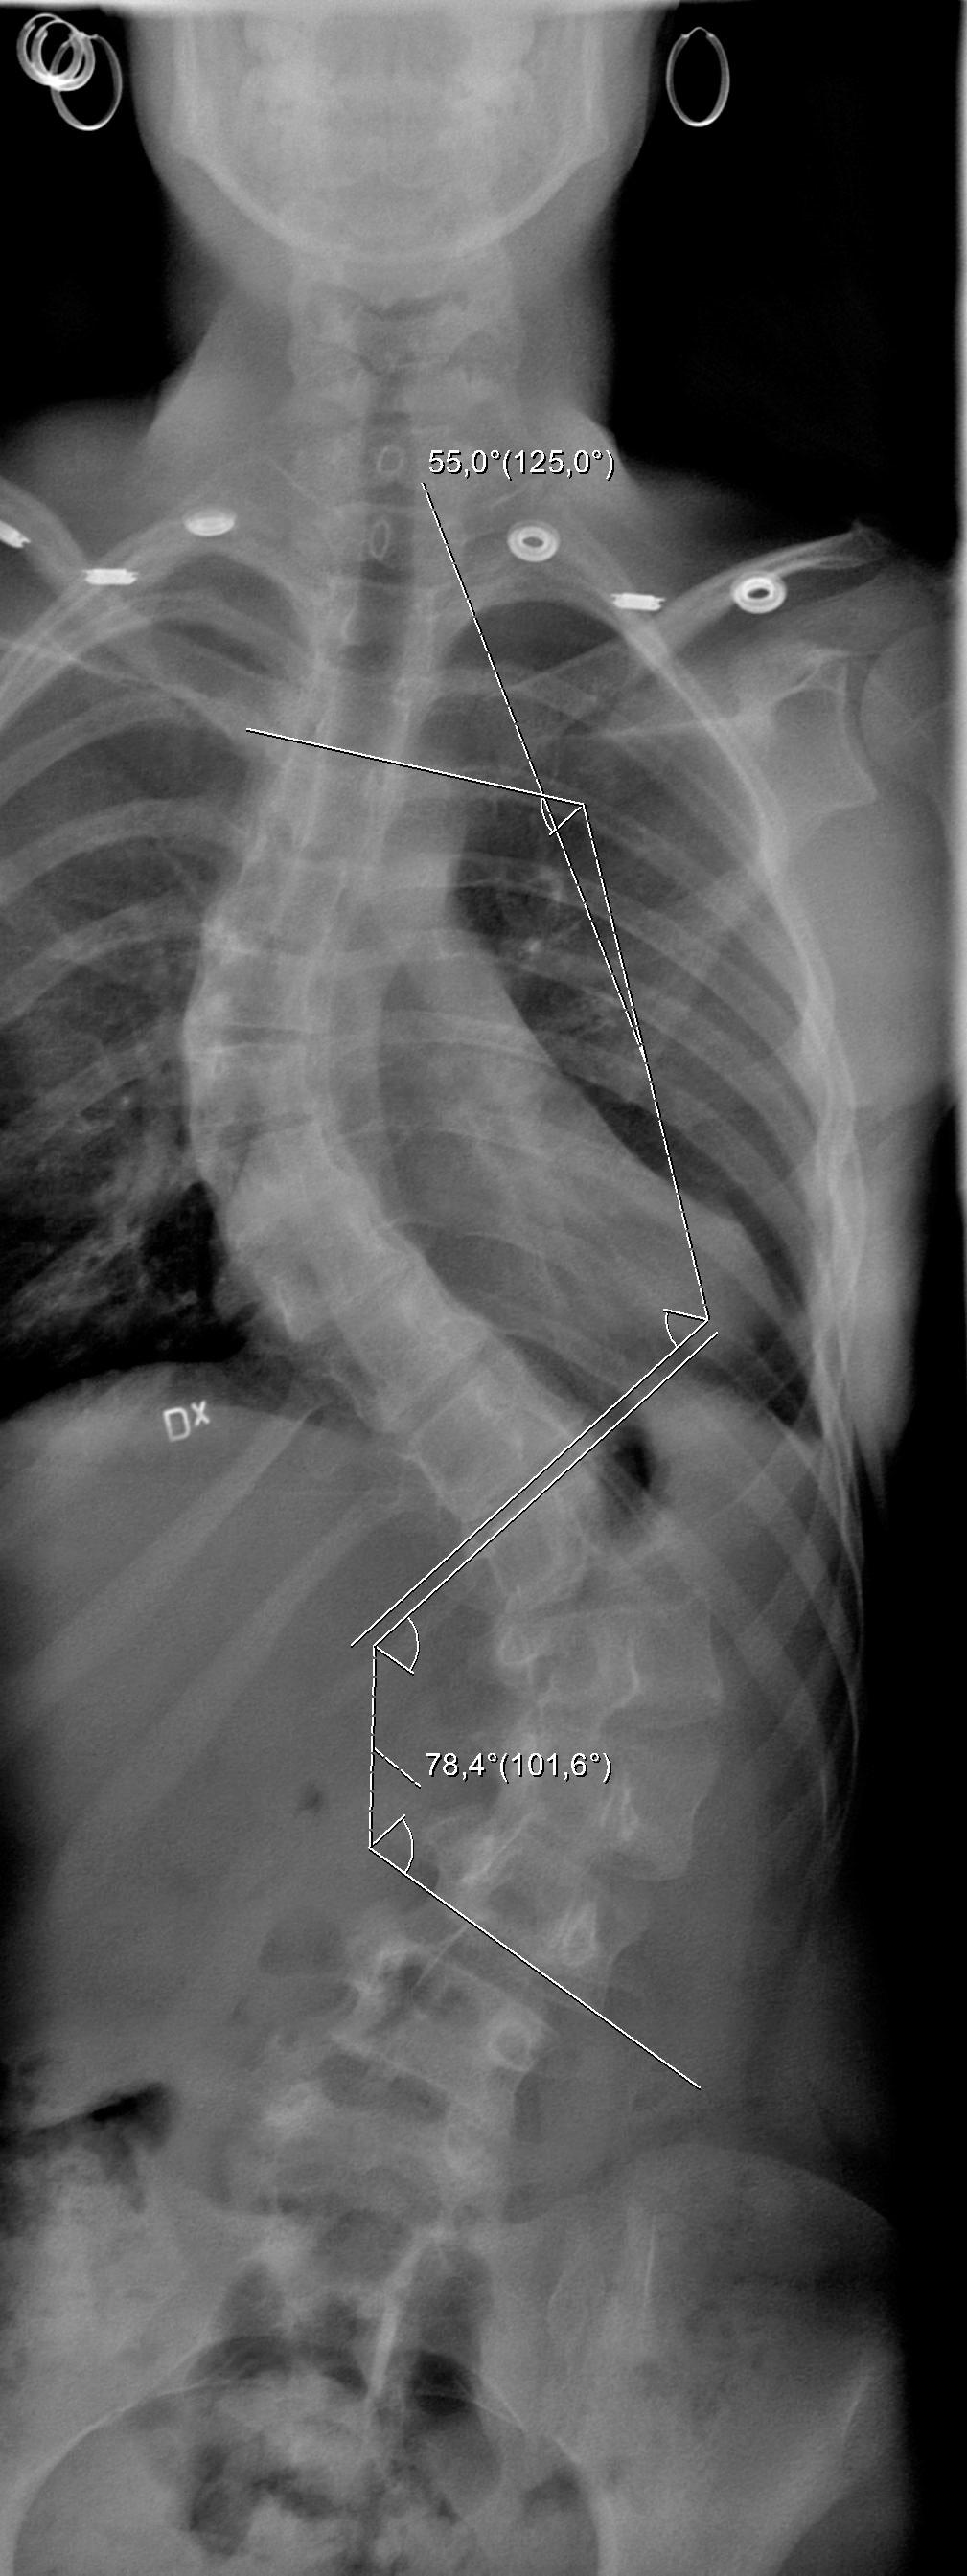 ÅR 2002:  Röntgen före steloperationen. Linda, 12, hade en kraftig S-formad dubbelkrök på ryggraden. Vinkeln på den nedre kröken var 78 grader och på den övre 55 grader.